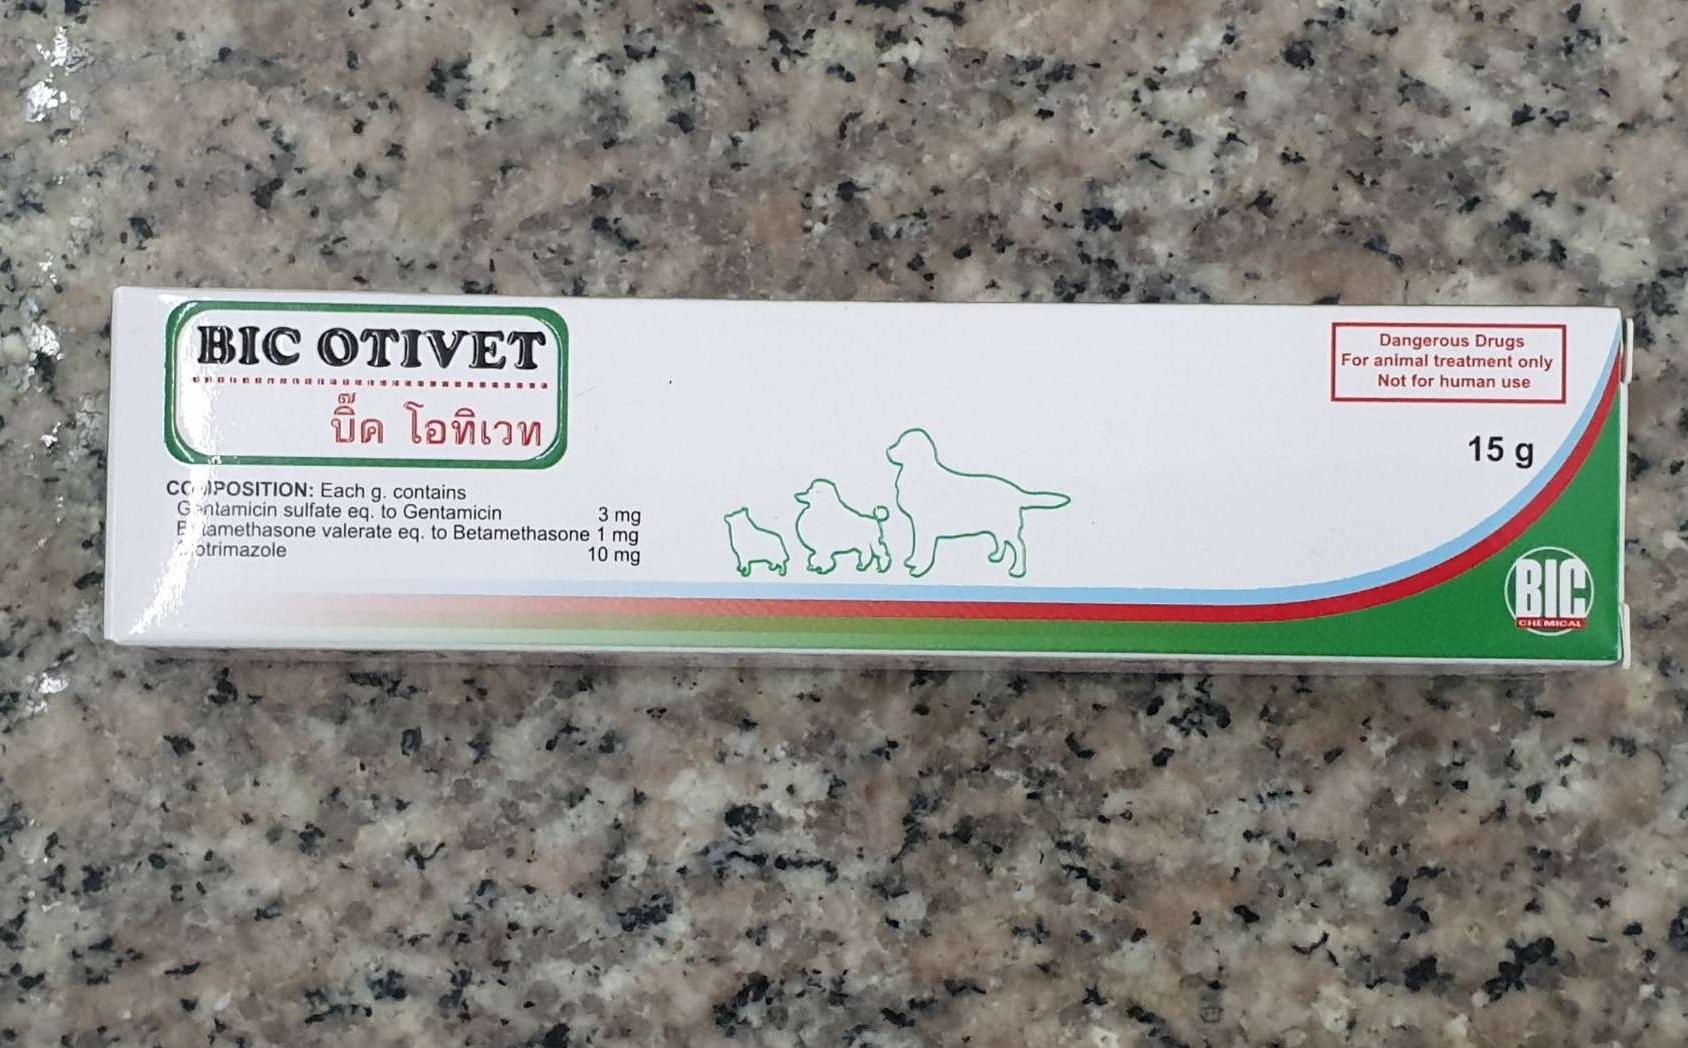 BIC Otivet 15 g ยาหยอดหูสุนัข รักษาหูอักเสบ คัน จากยีสต์ แบคทีเรีย